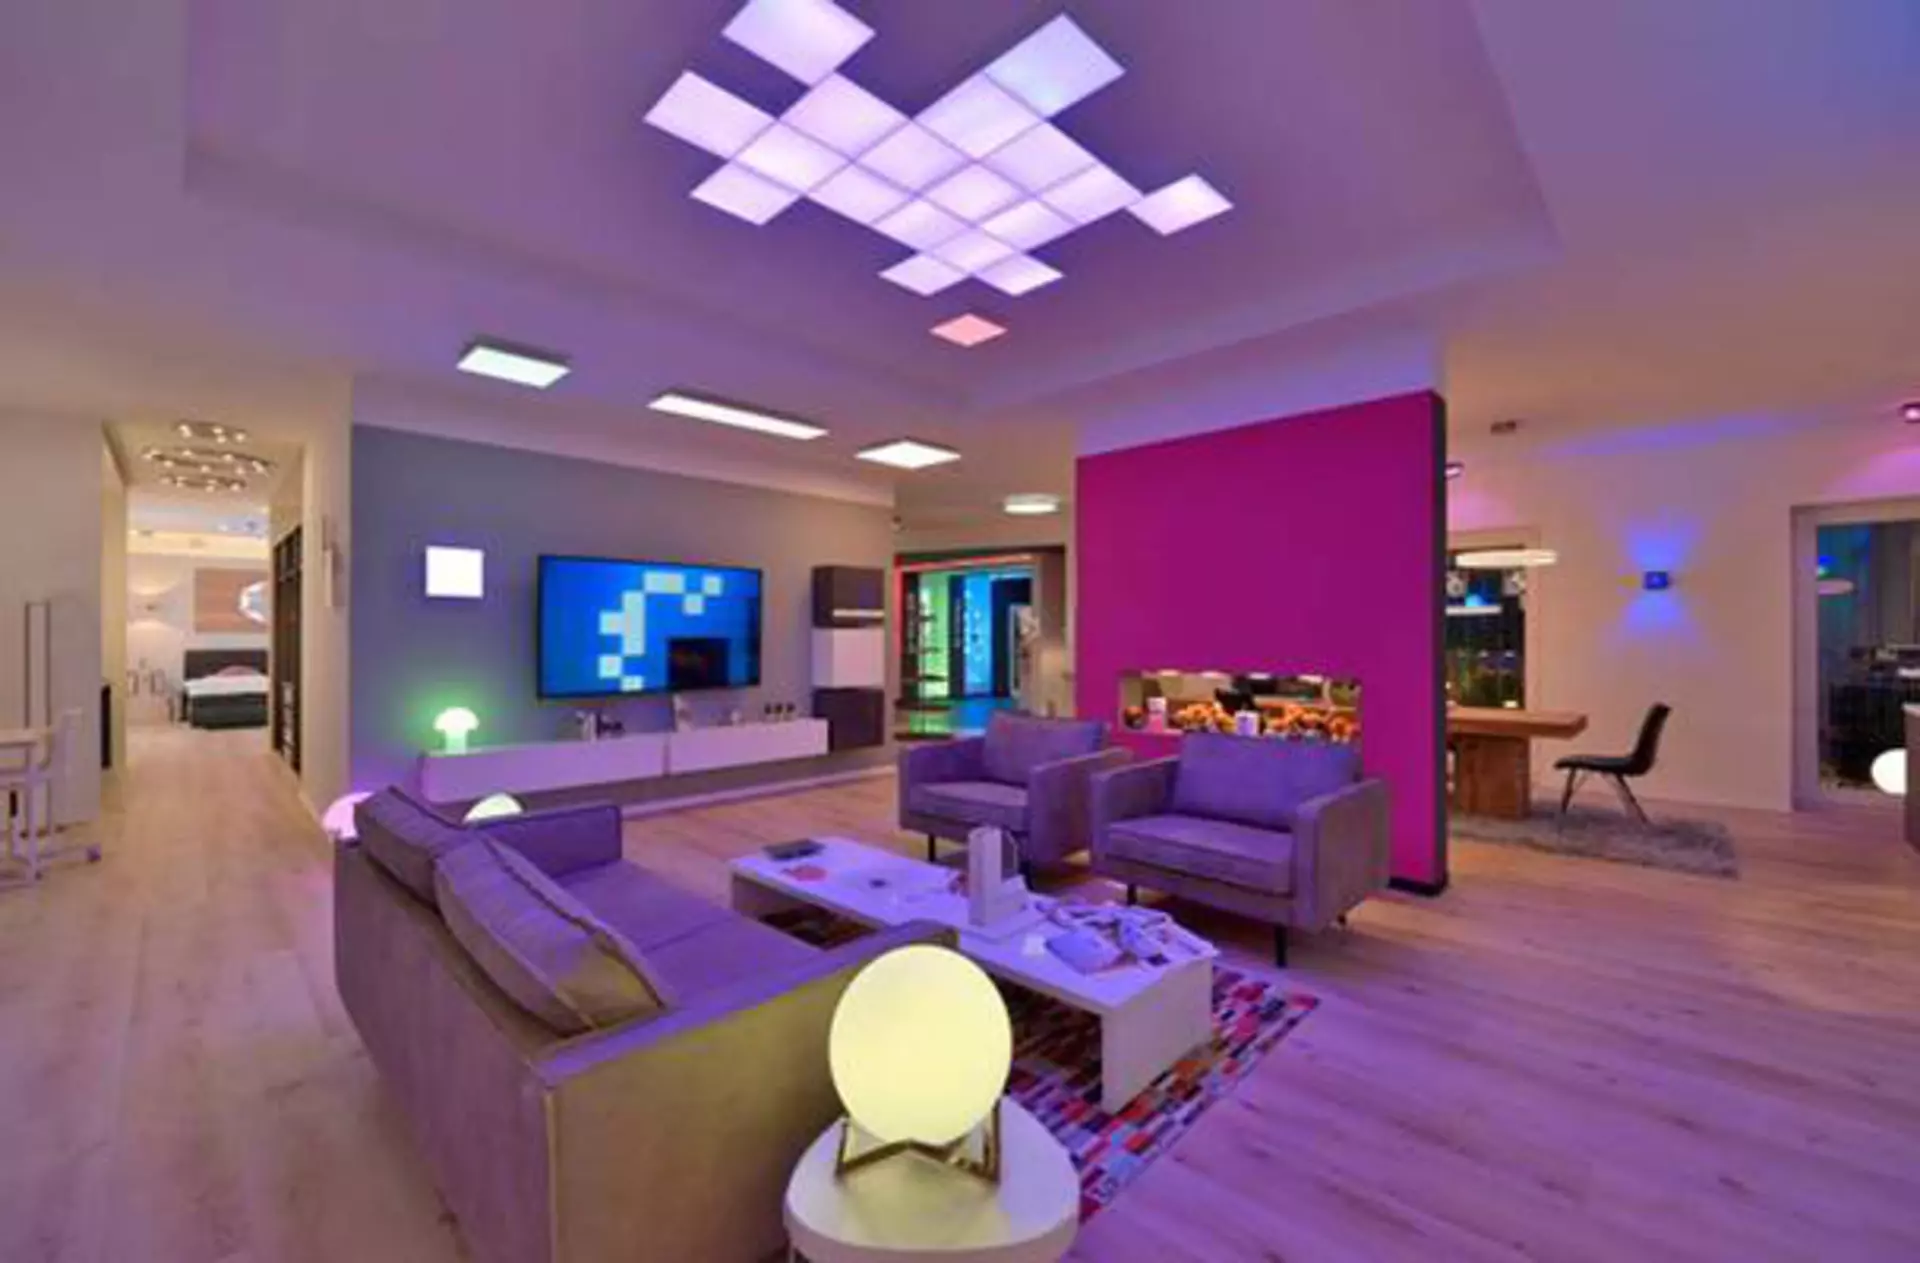 Ein junges Wohnzimmer in buntes Licht getaucht als Milieubild für den Inspirationsbereich "Smart Home".